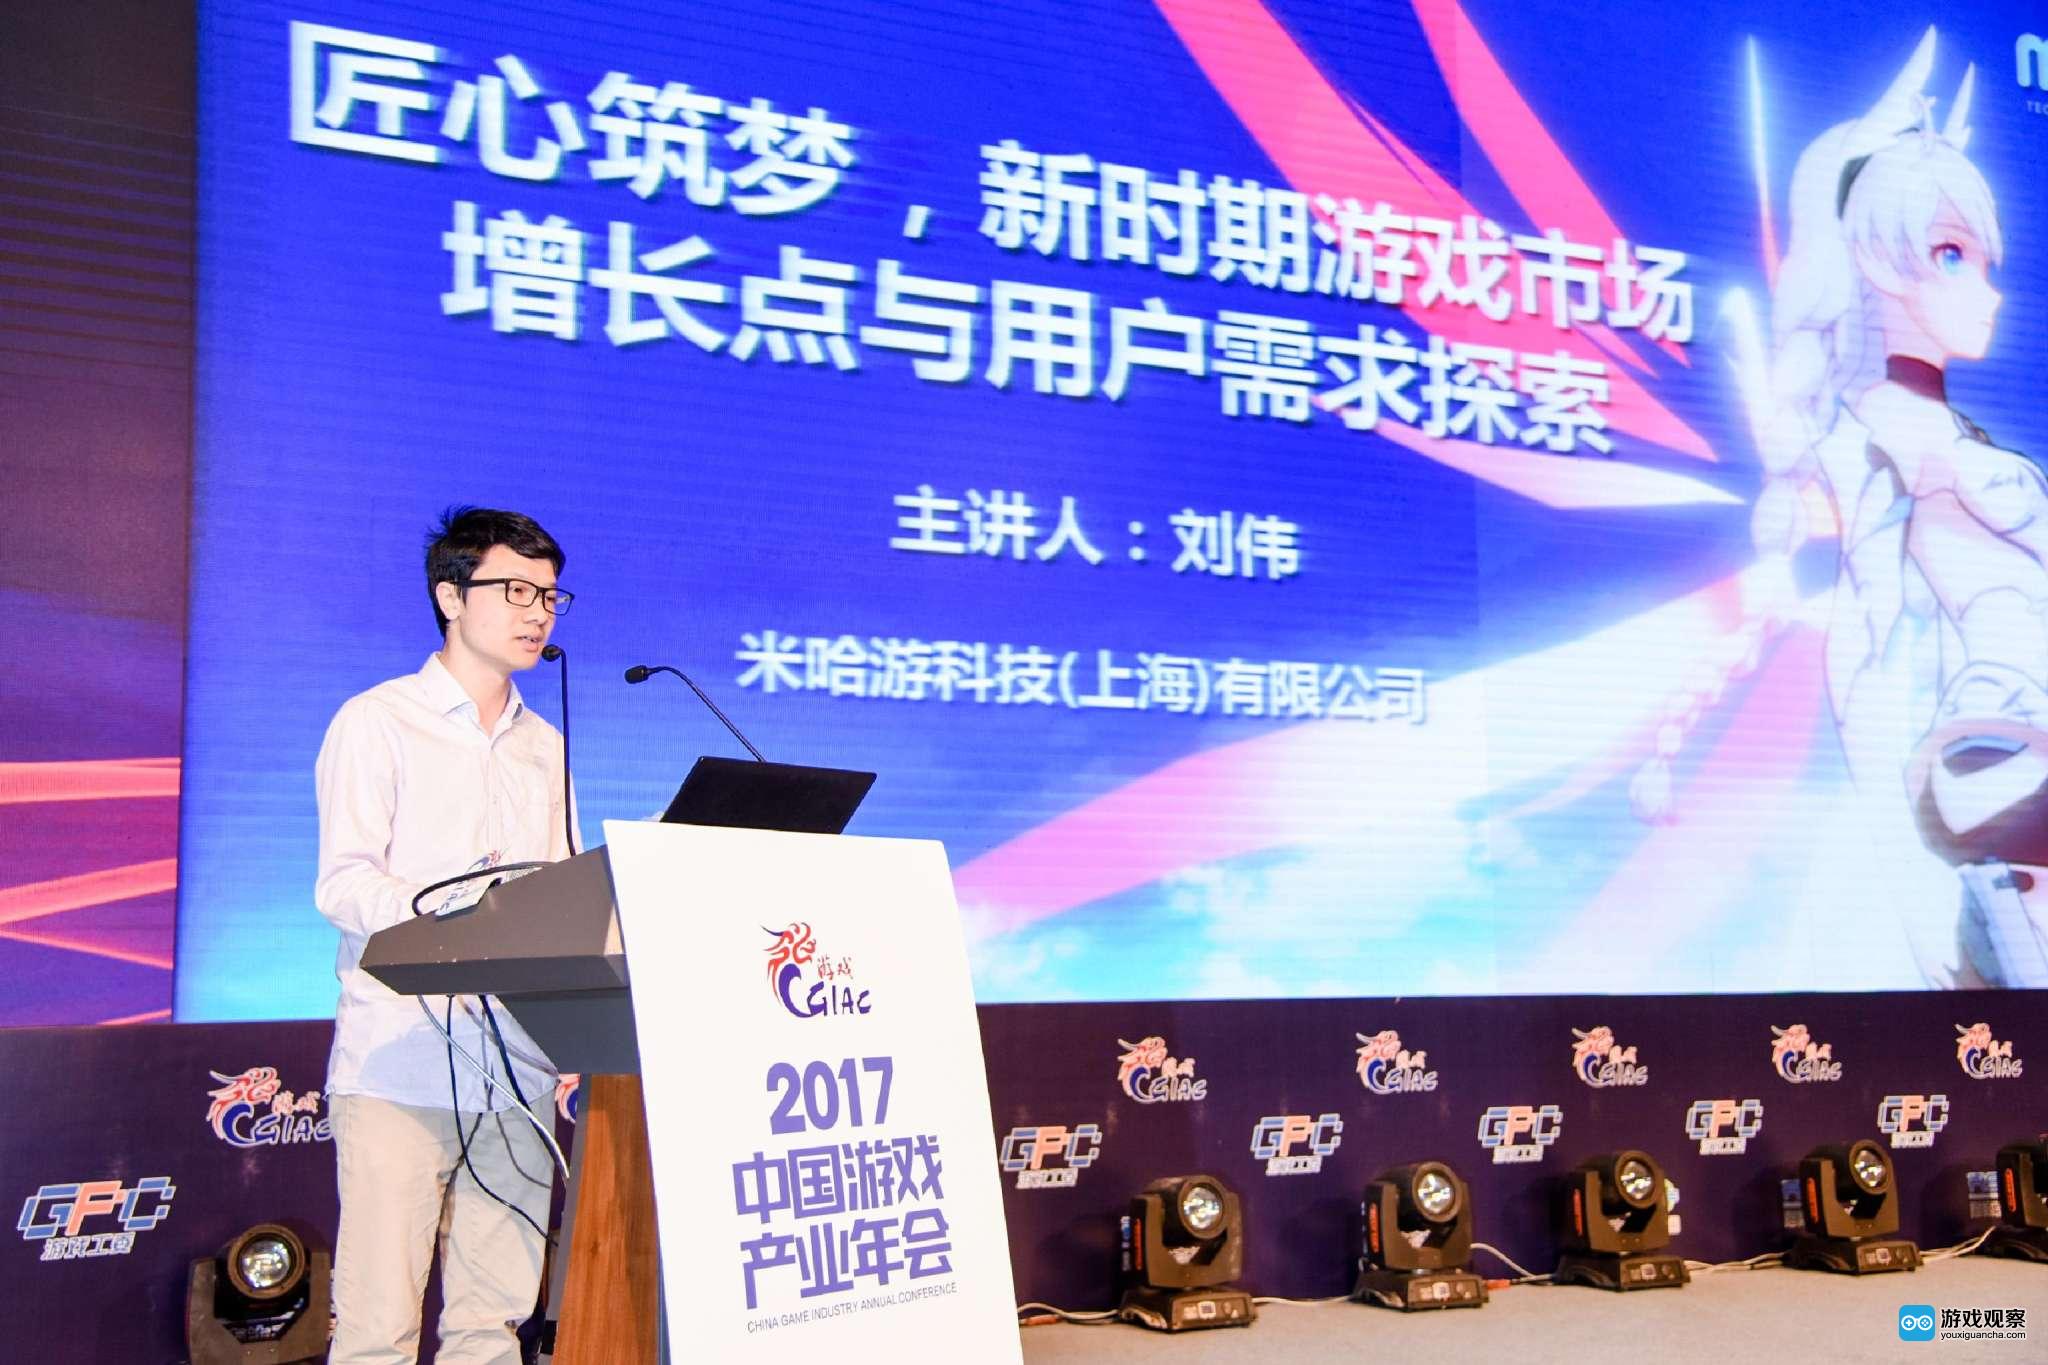 米哈游刘伟:新时期游戏市场增长点与用户需求探索